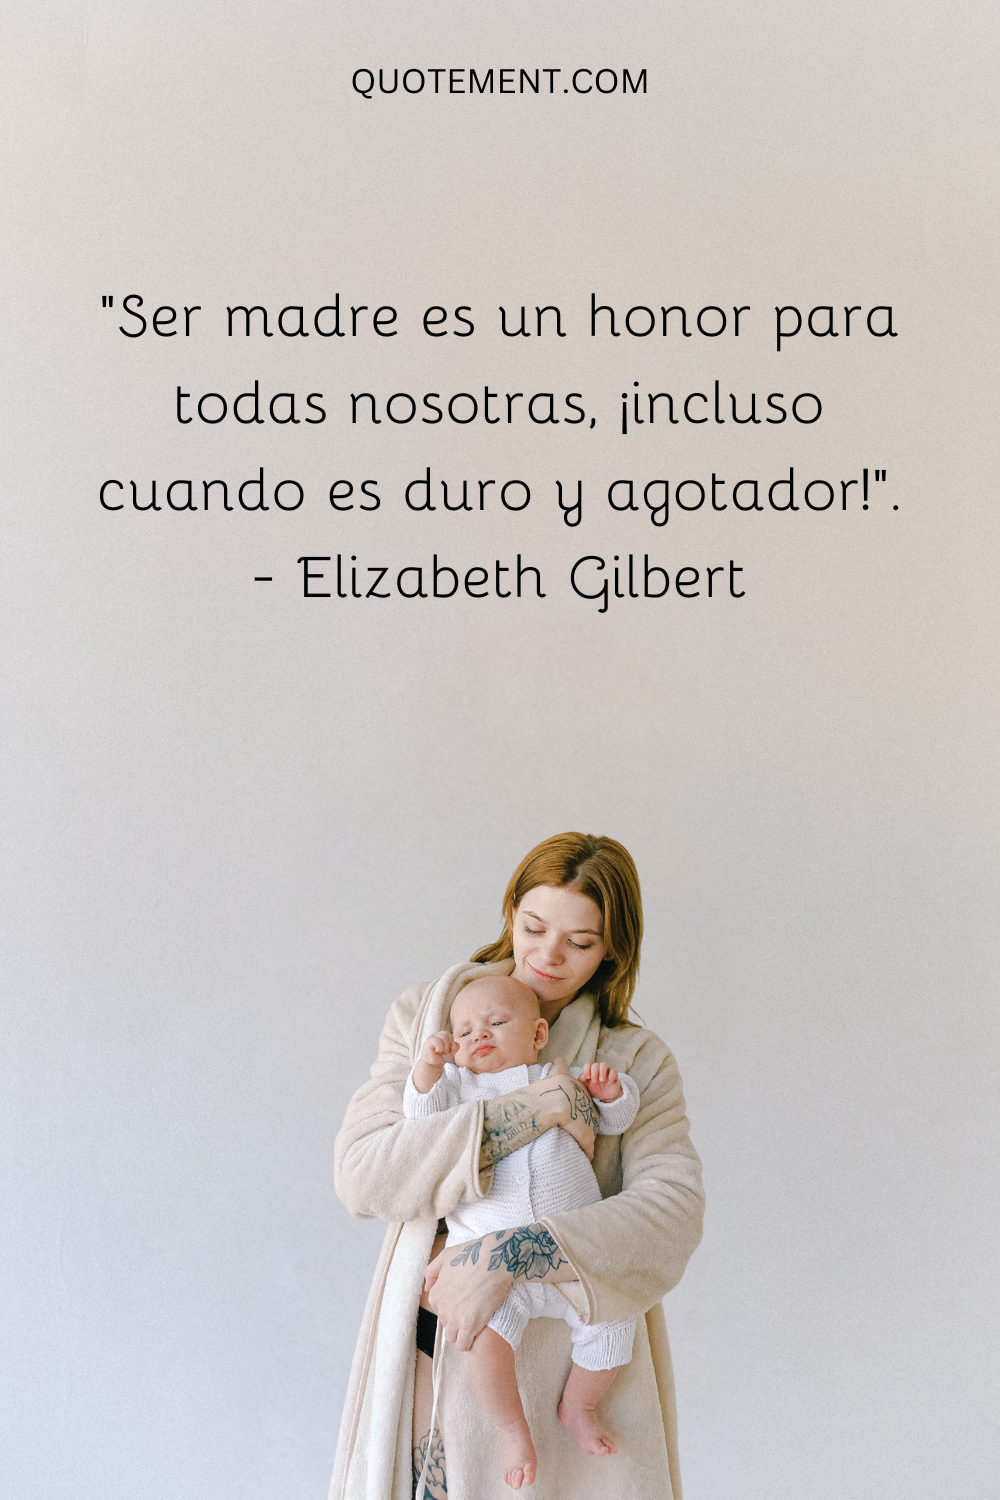 Ser madre es un honor para todas nosotras, incluso cuando es duro y agotador.